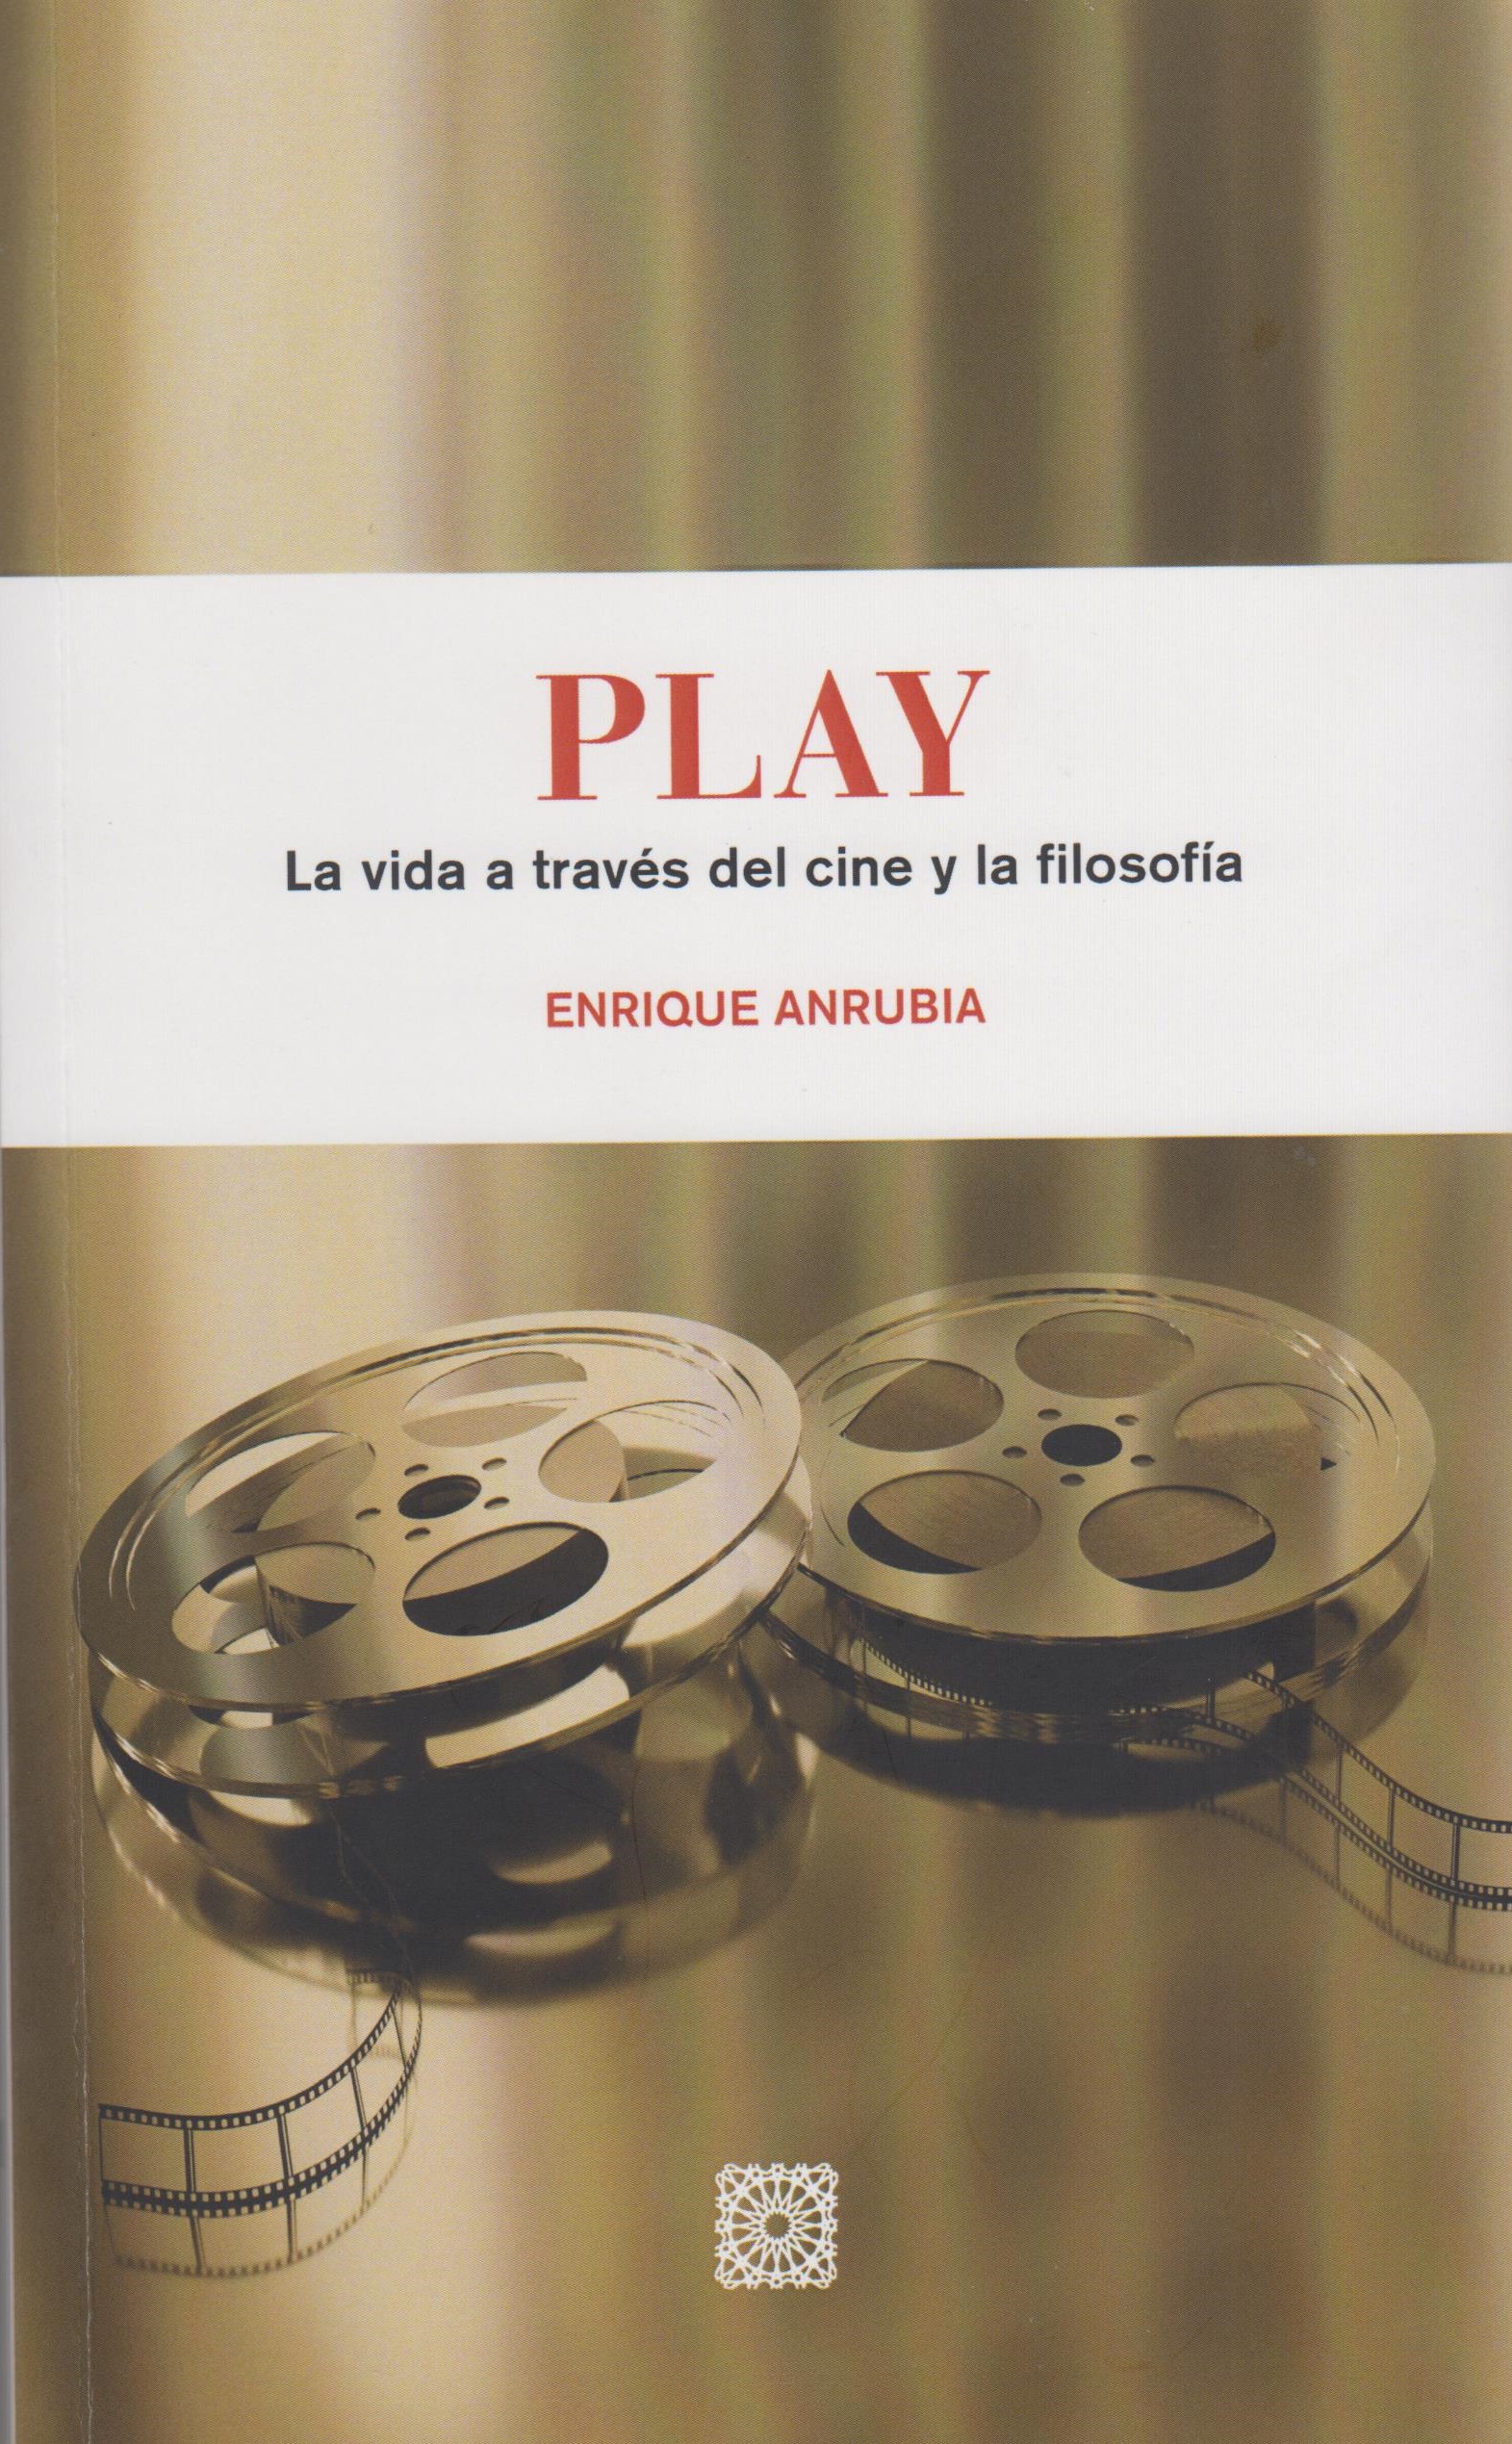 Imagen de portada del libro Play